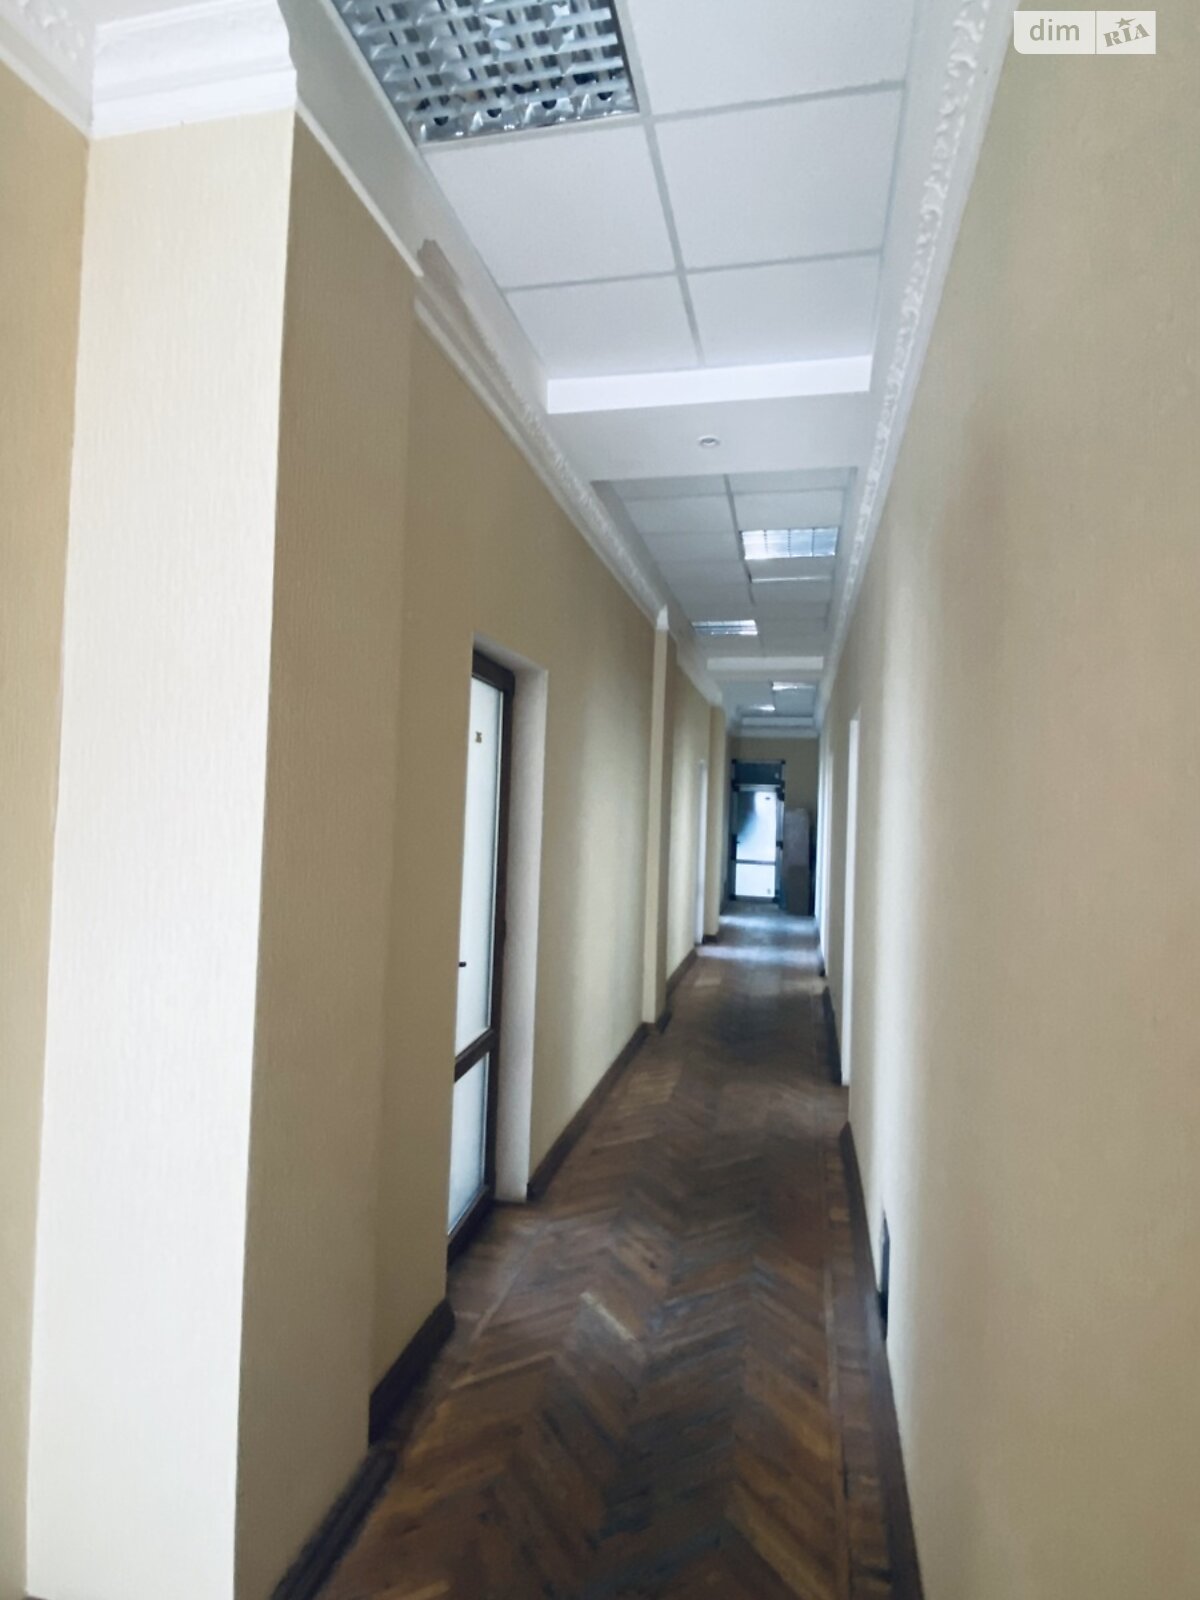 Аренда офисного помещения в Николаеве, Спасская улица 72, помещений - 1, этаж - 2 фото 1